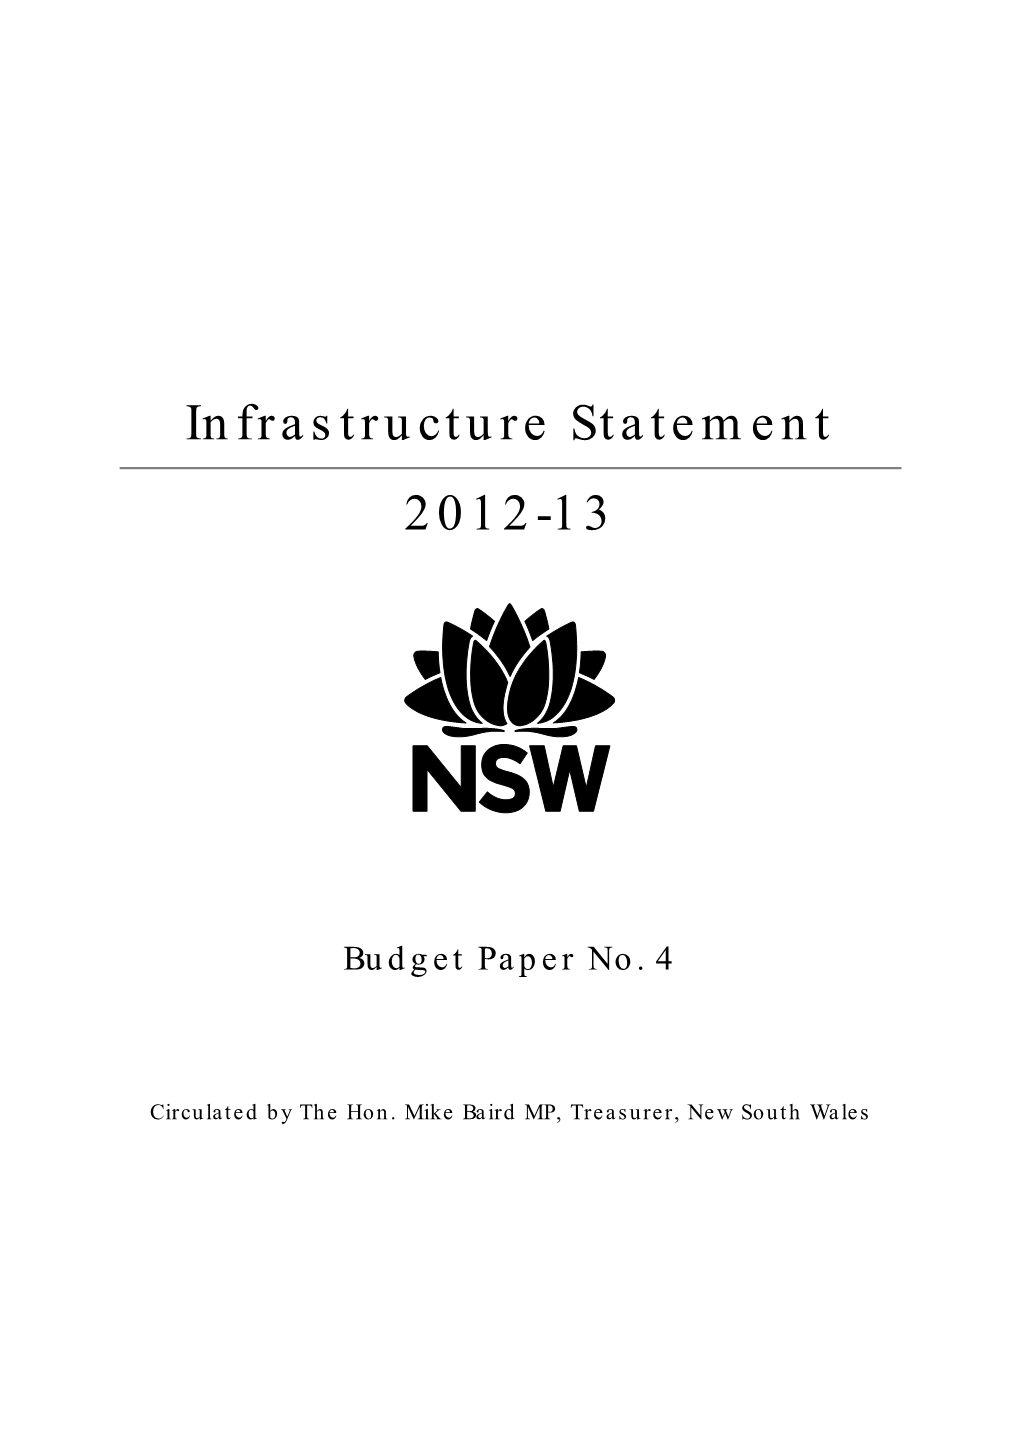 Budget Paper 2012-13, Infrasturcture Statement